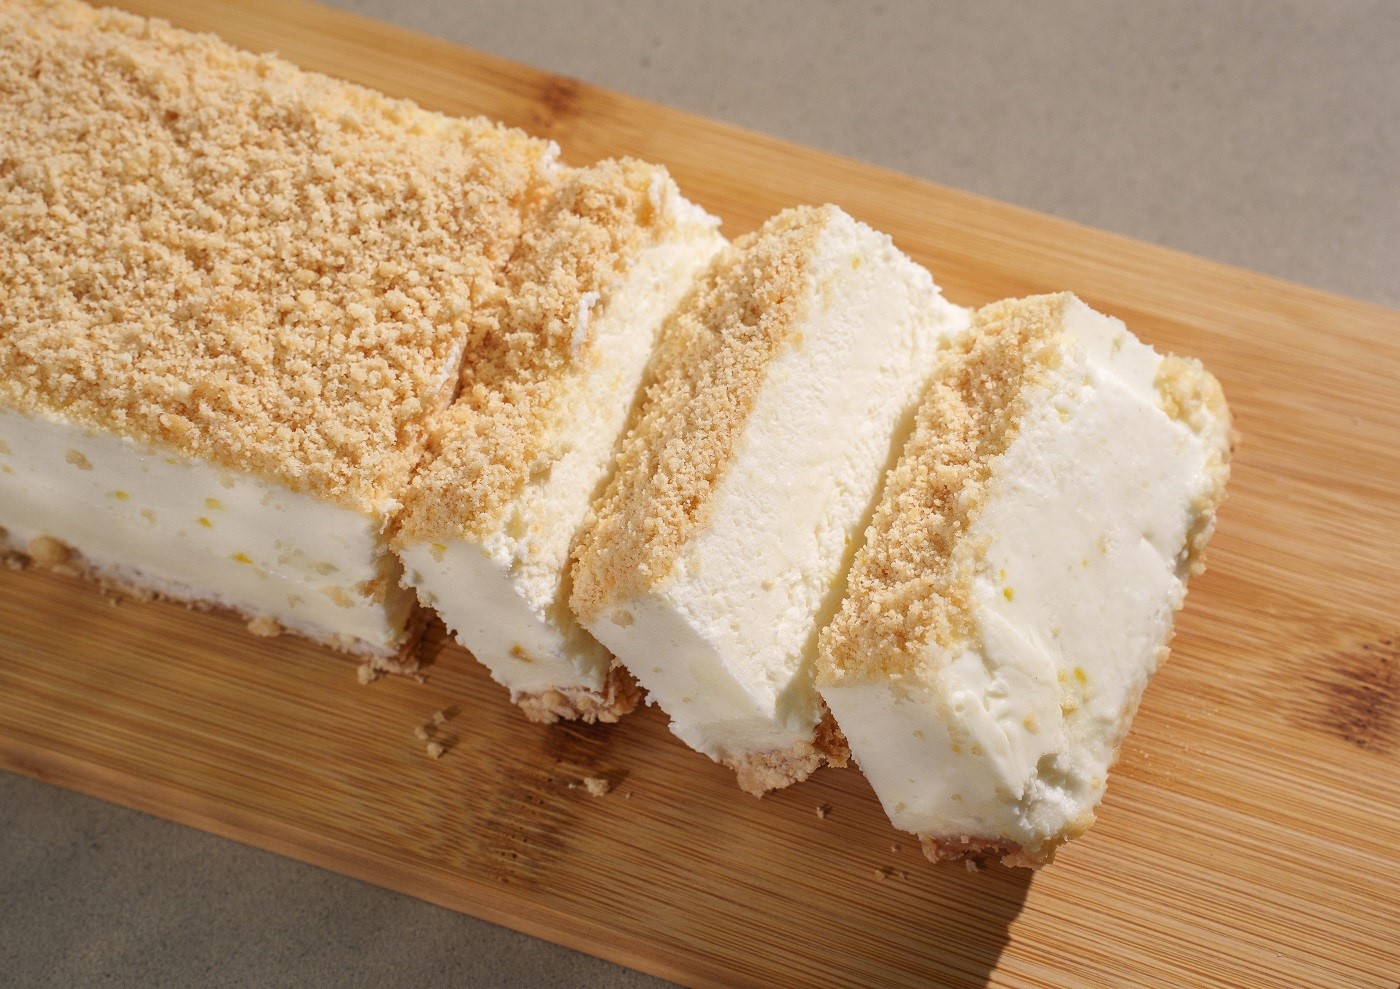 עוגת גבינה של ביגה ללא סוכר 64שח (צילום: איתמר גינזבורג)